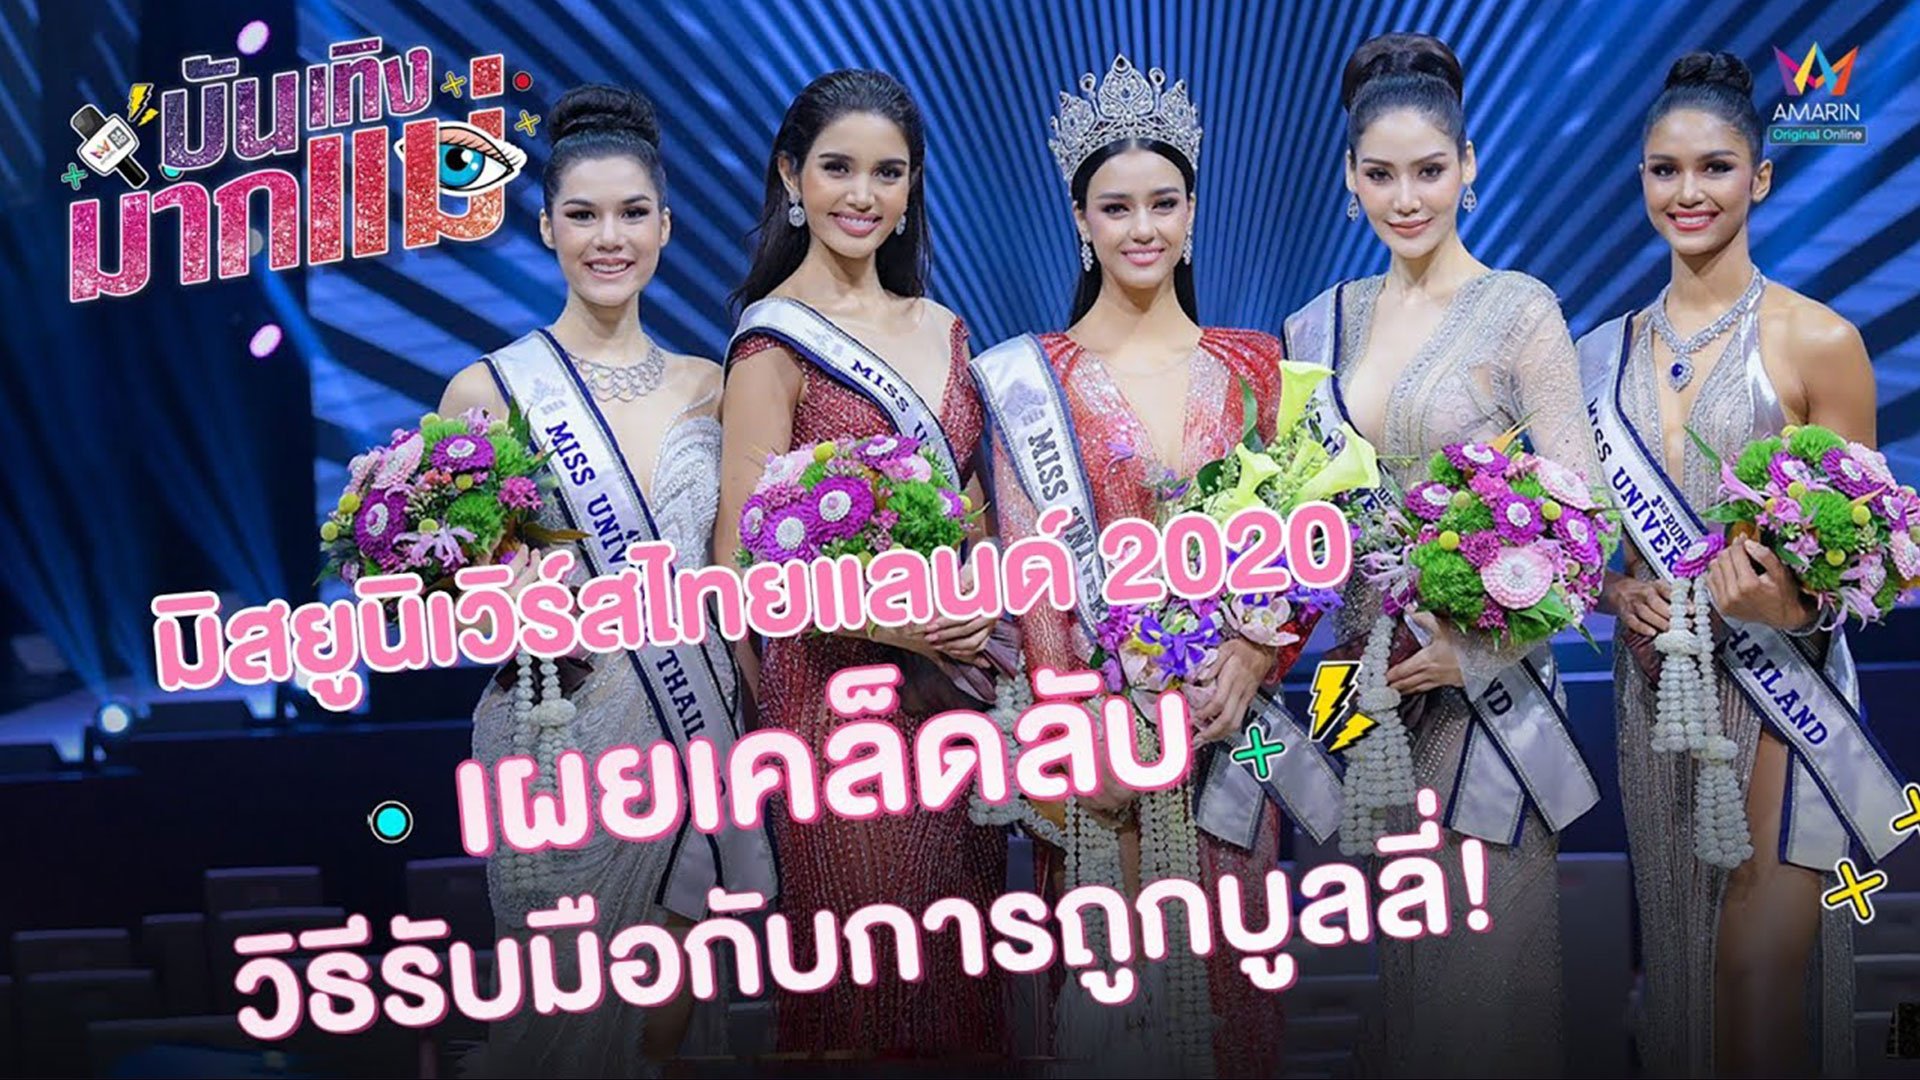 บันเทิงมากแม่ | EP.20 ทีม miss universe thailand 2020 เผยเคล็ดลับ วิธีรับมือกับการถูกบูลลี่!! | 19 ต.ค. 63 | AMARIN TVHD34